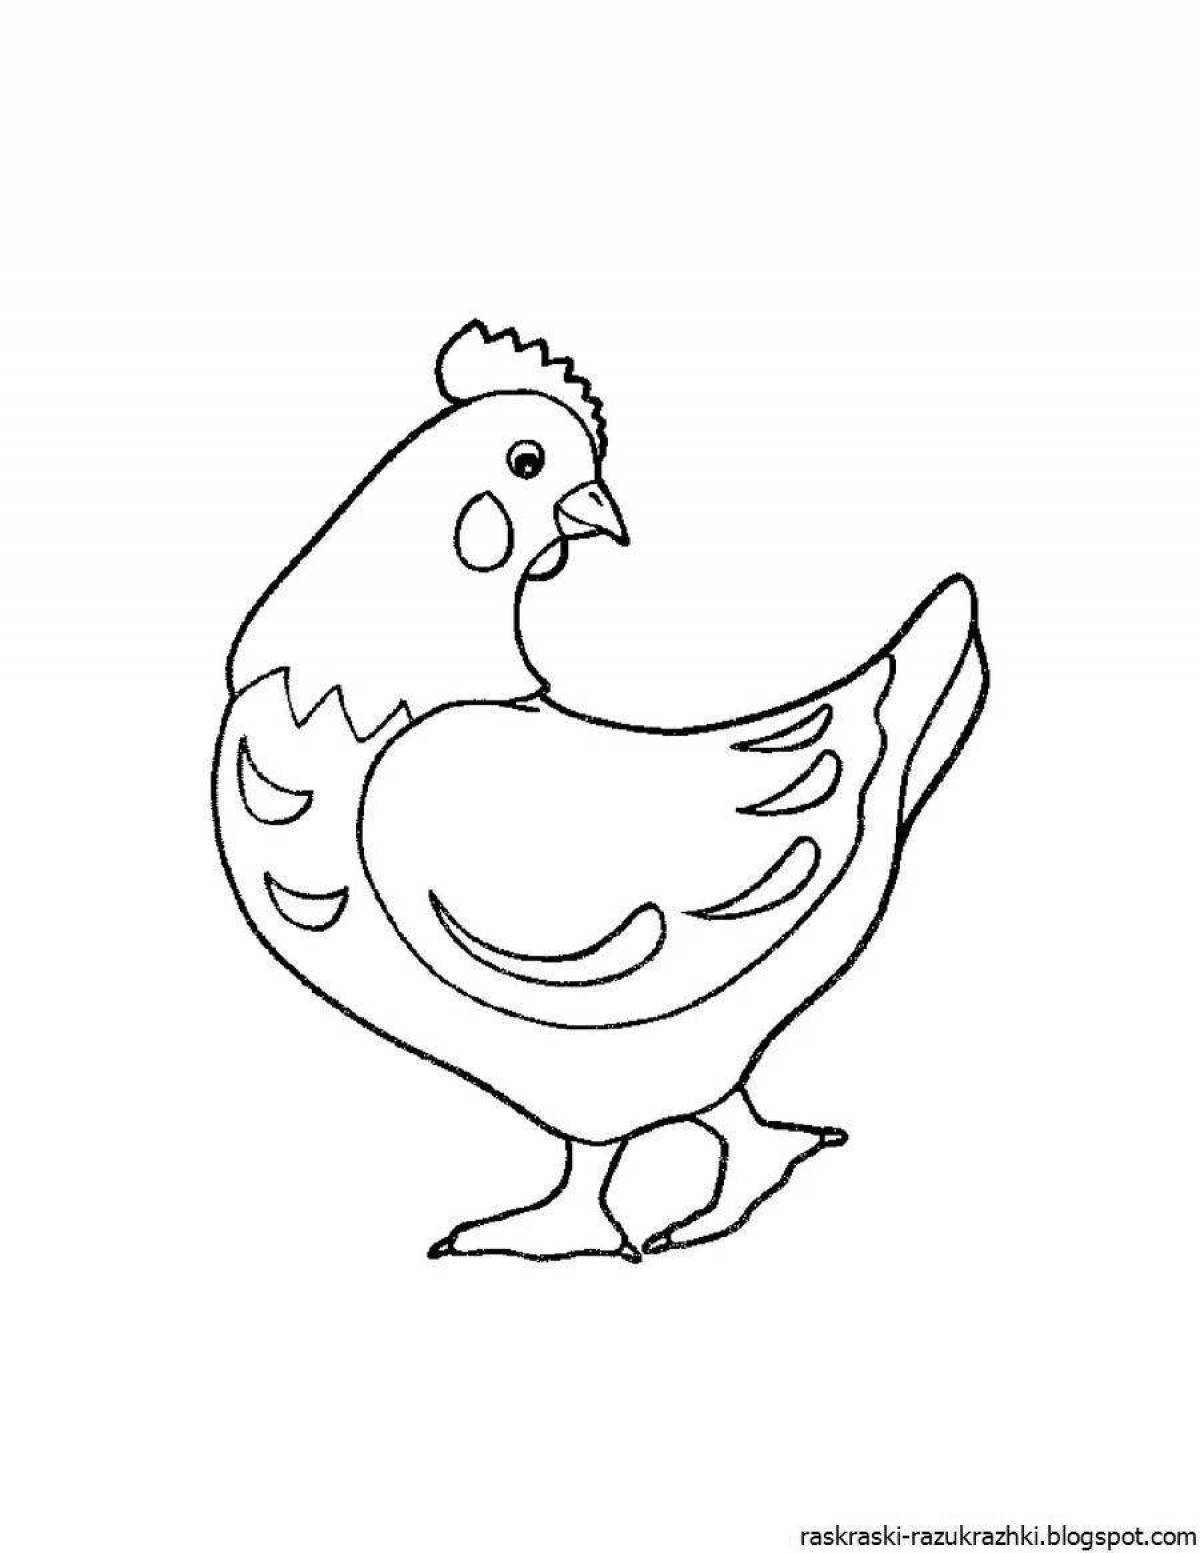 Игривая страница раскраски цыпленка для детей